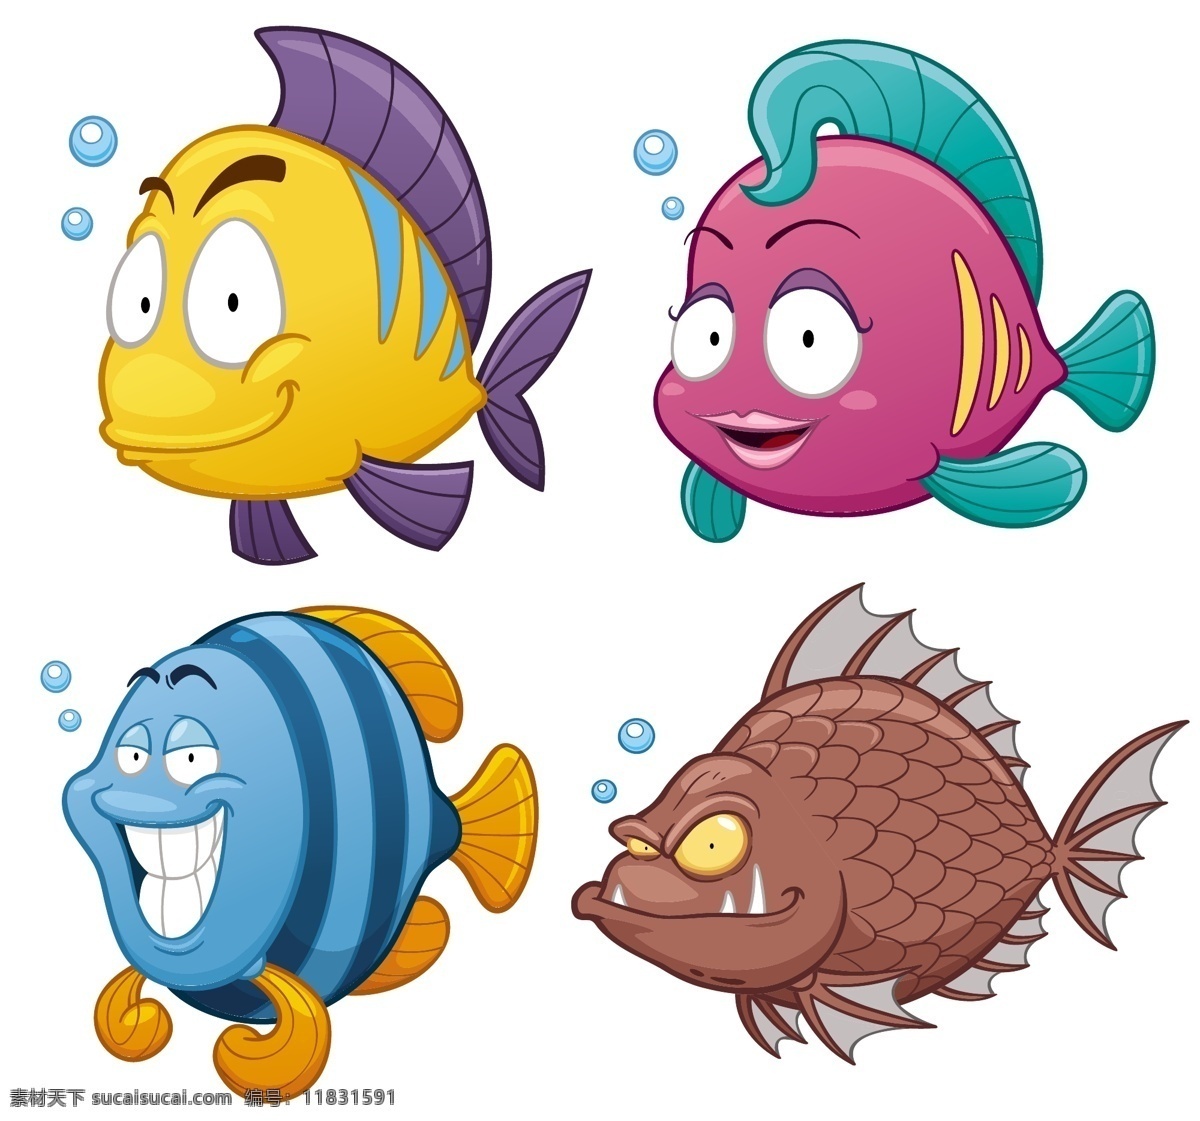 海洋鱼类插画 卡通鱼 食人鱼 卡通动物漫画 动物插画 动物插图 卡通形象 卡通 动物 漫画动物 平面素材